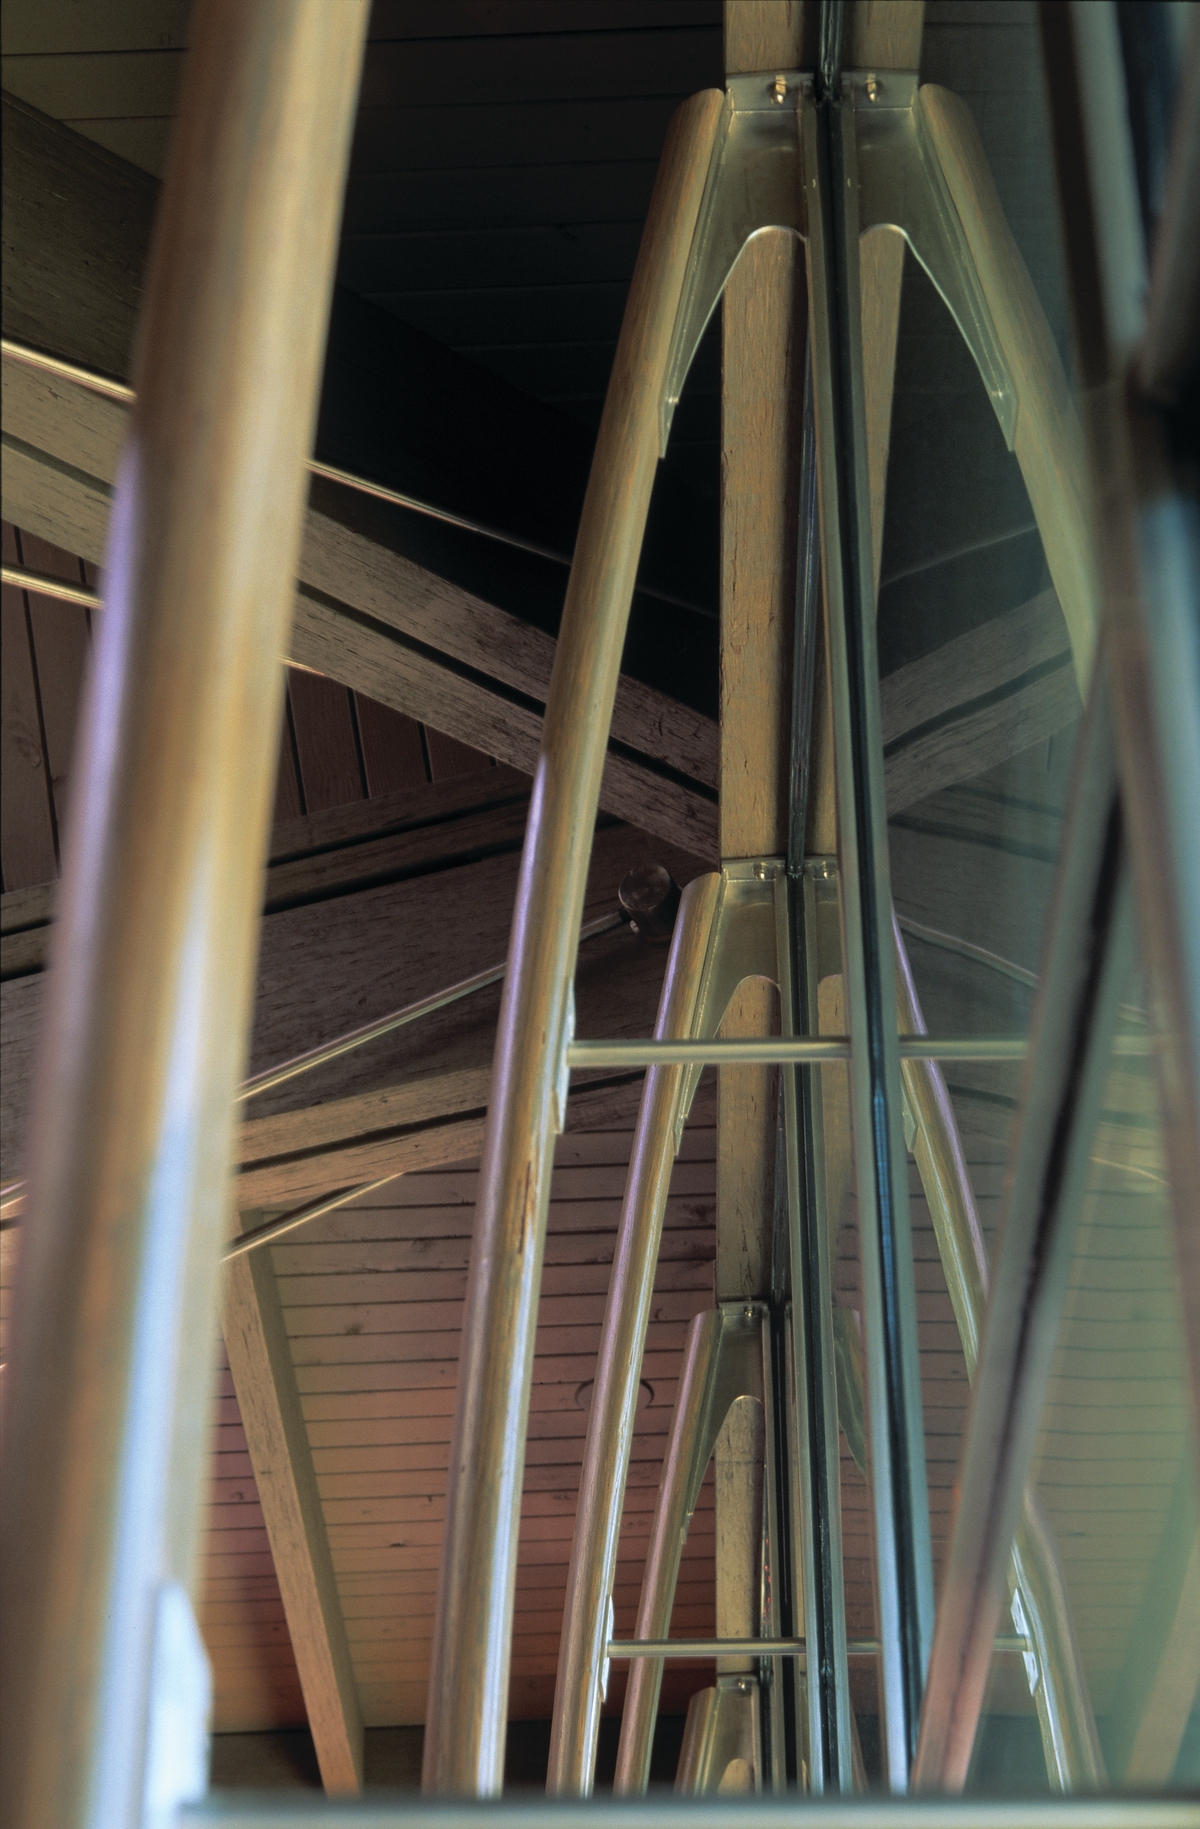 平行绞线木材(PSL)屋面梁支撑尺寸木材屋面甲板，全部由钢和磨细的PSL桁架竖框支撑。